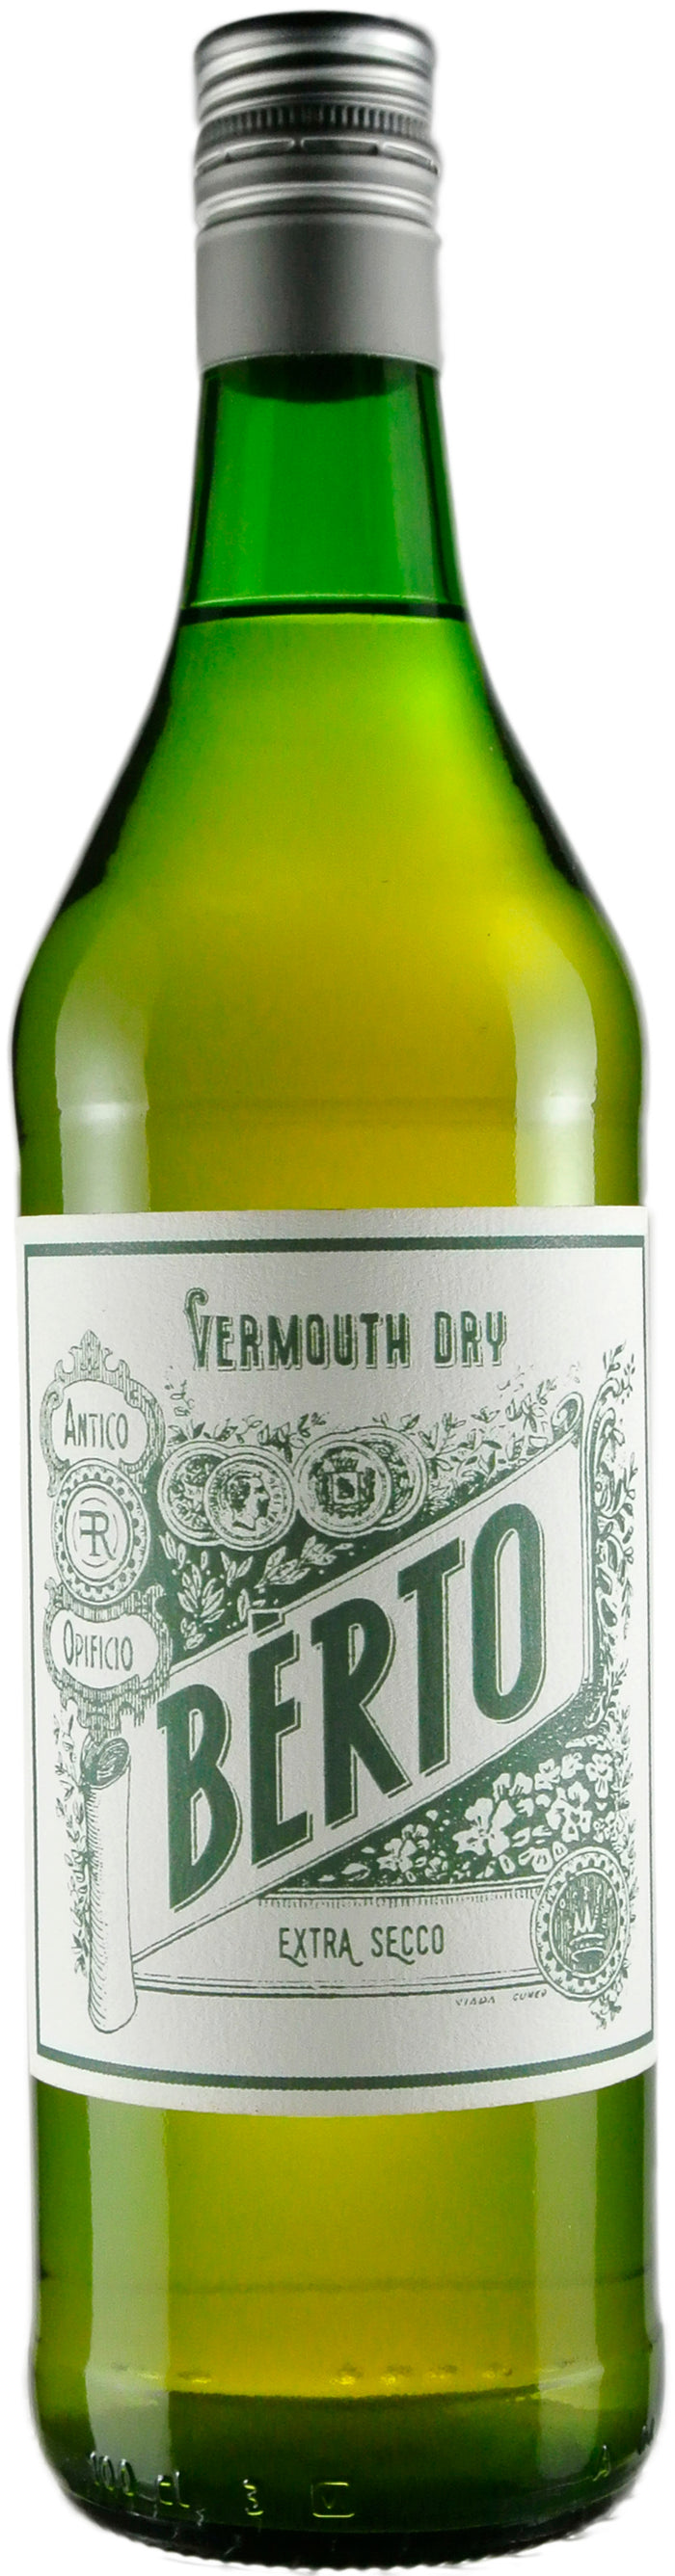 Berto Dry Extra Secco Vermouth | 1L